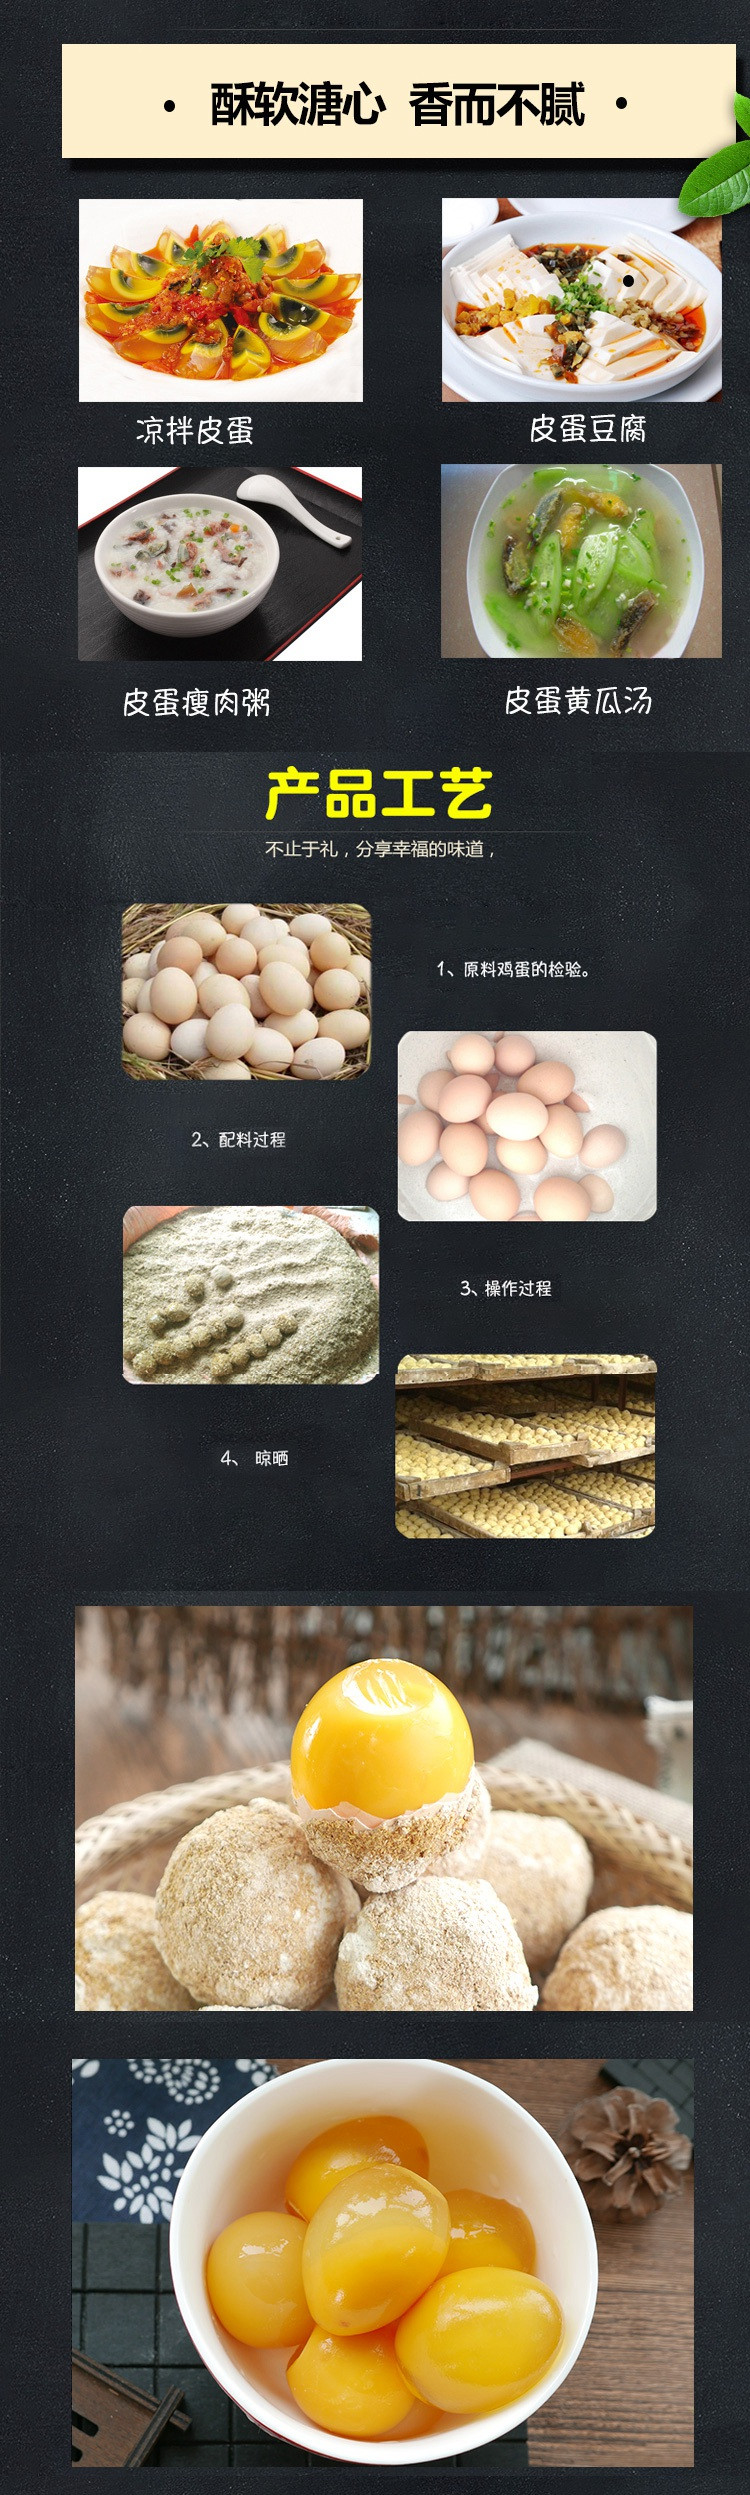 农家自制 18枚装变蛋 自制鸡蛋变蛋 松花蛋溏心鸡蛋黄金皮蛋